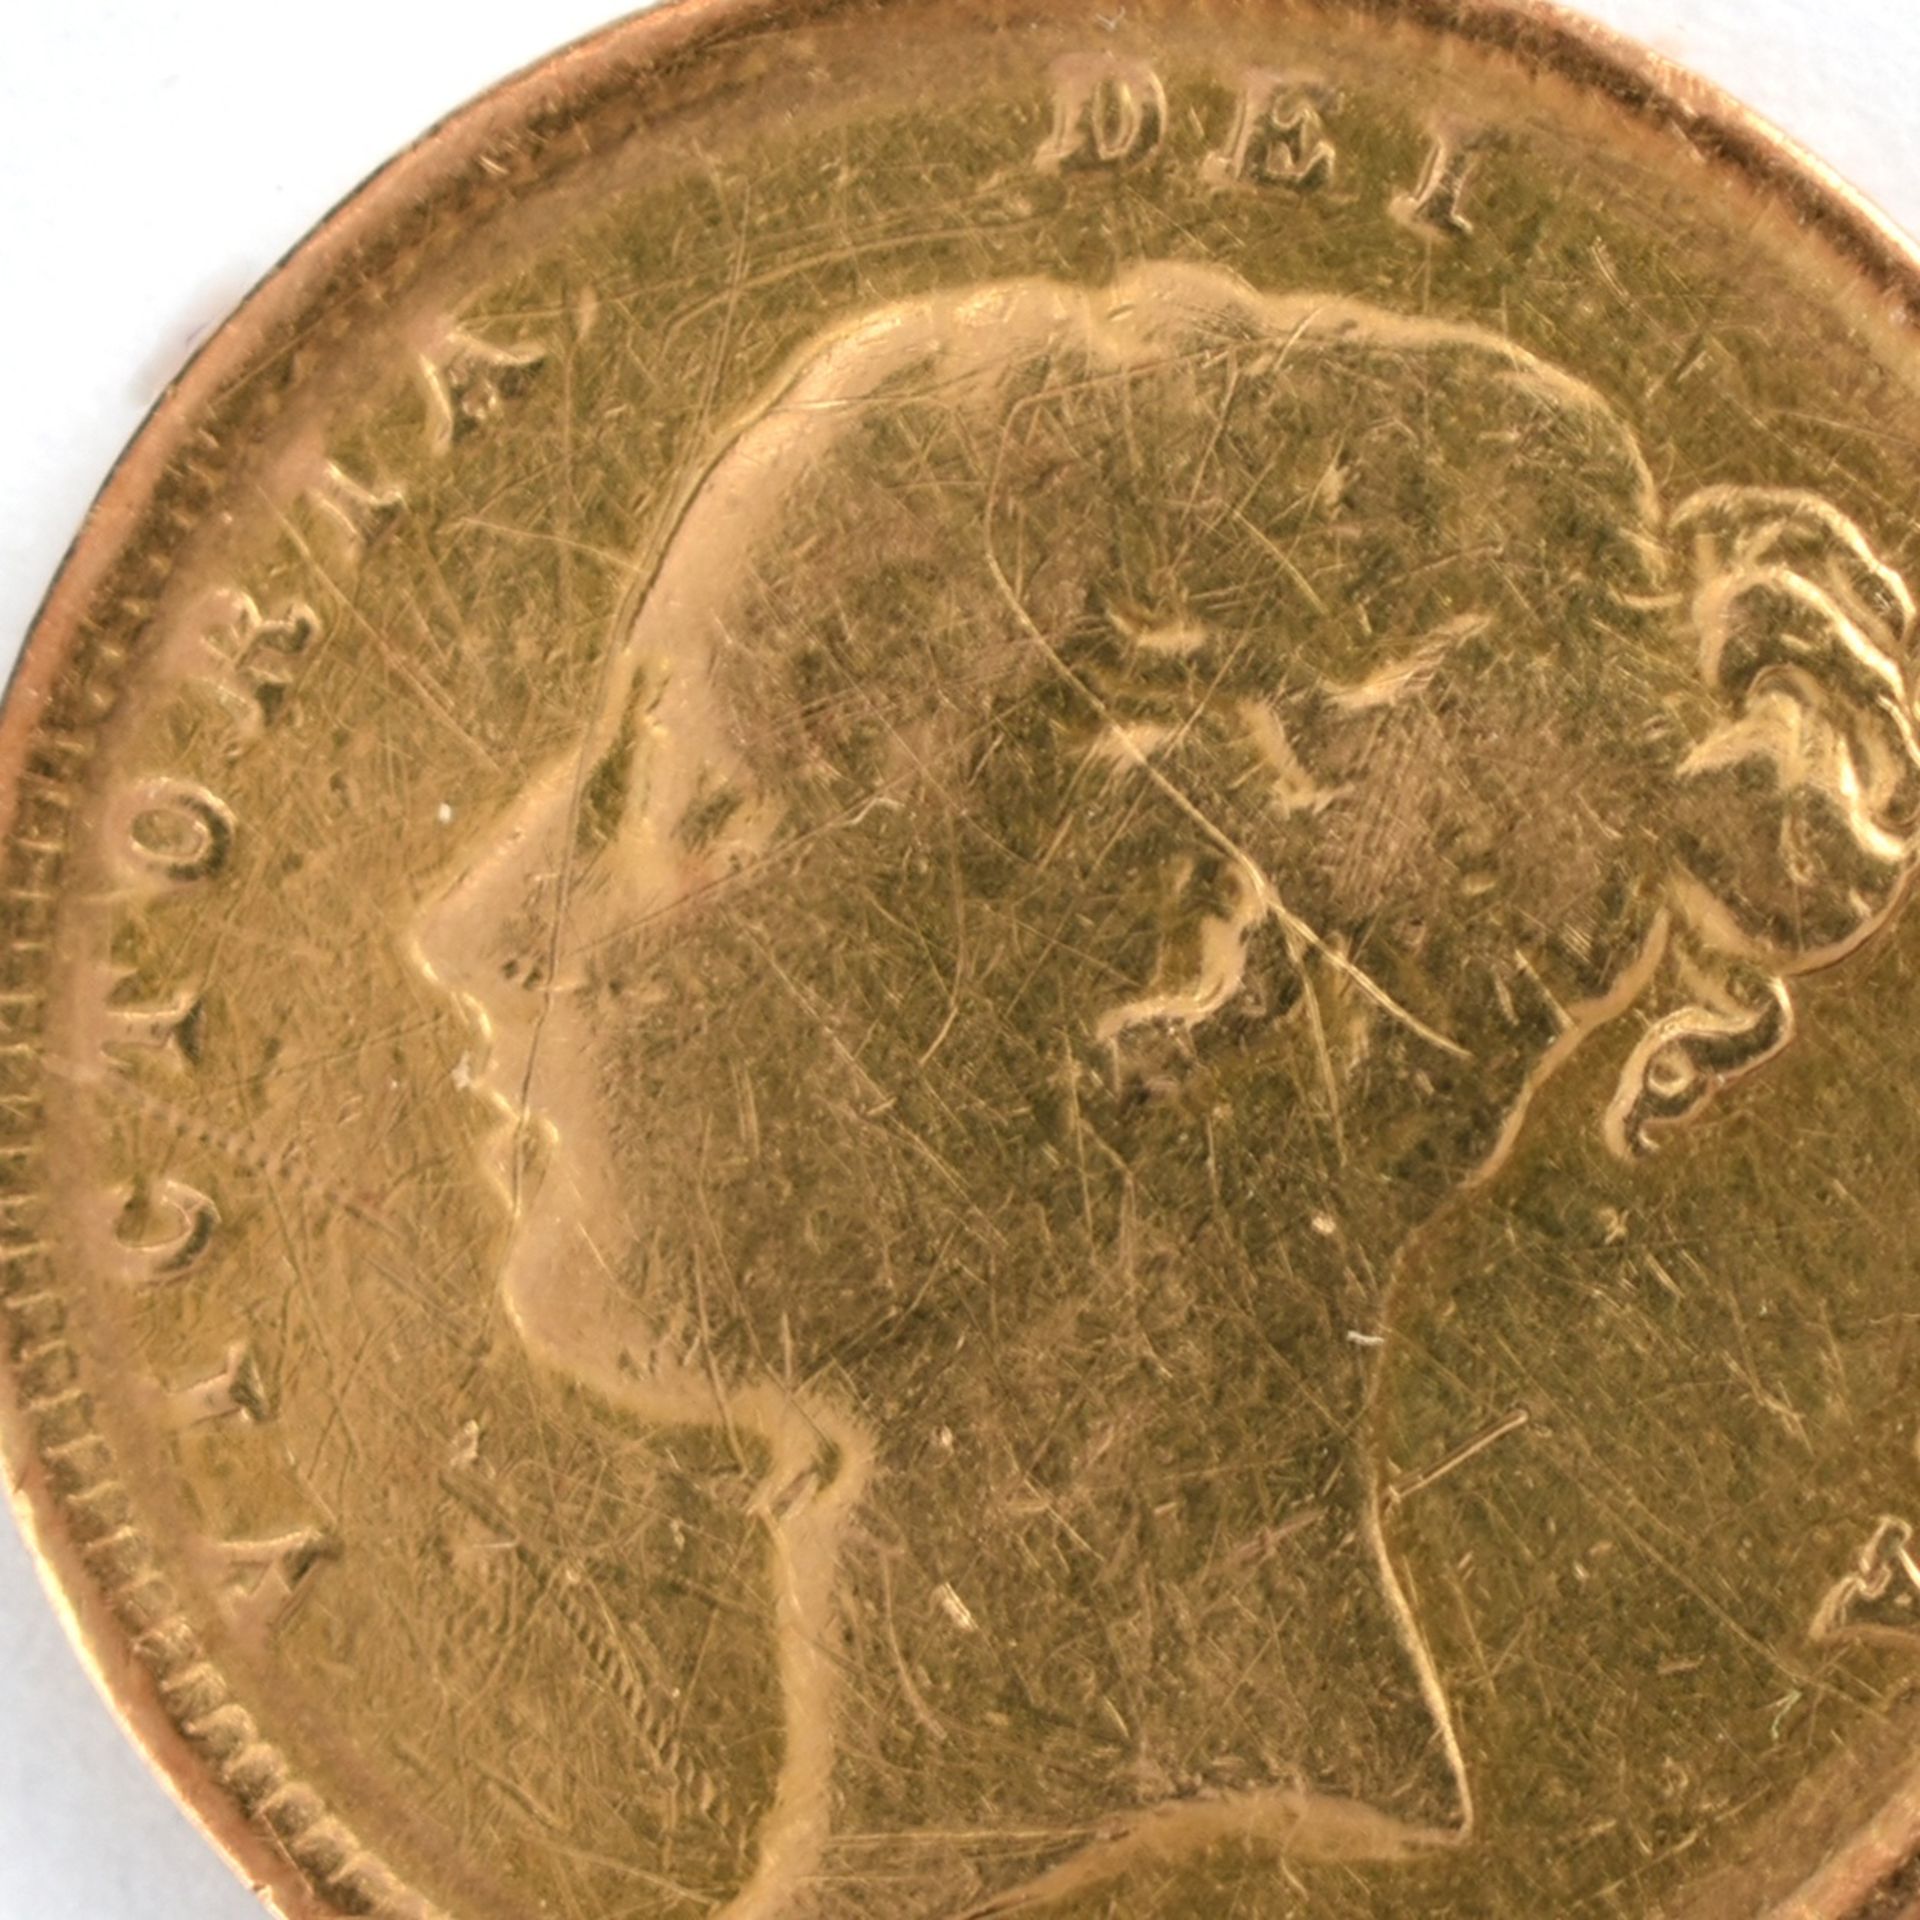 Goldmünze Großbritannien 1883 1/2 Sovereign - 1/2 Pfund in Gold, 3,994 g, 916/1000, D ca. 19,3 mm,